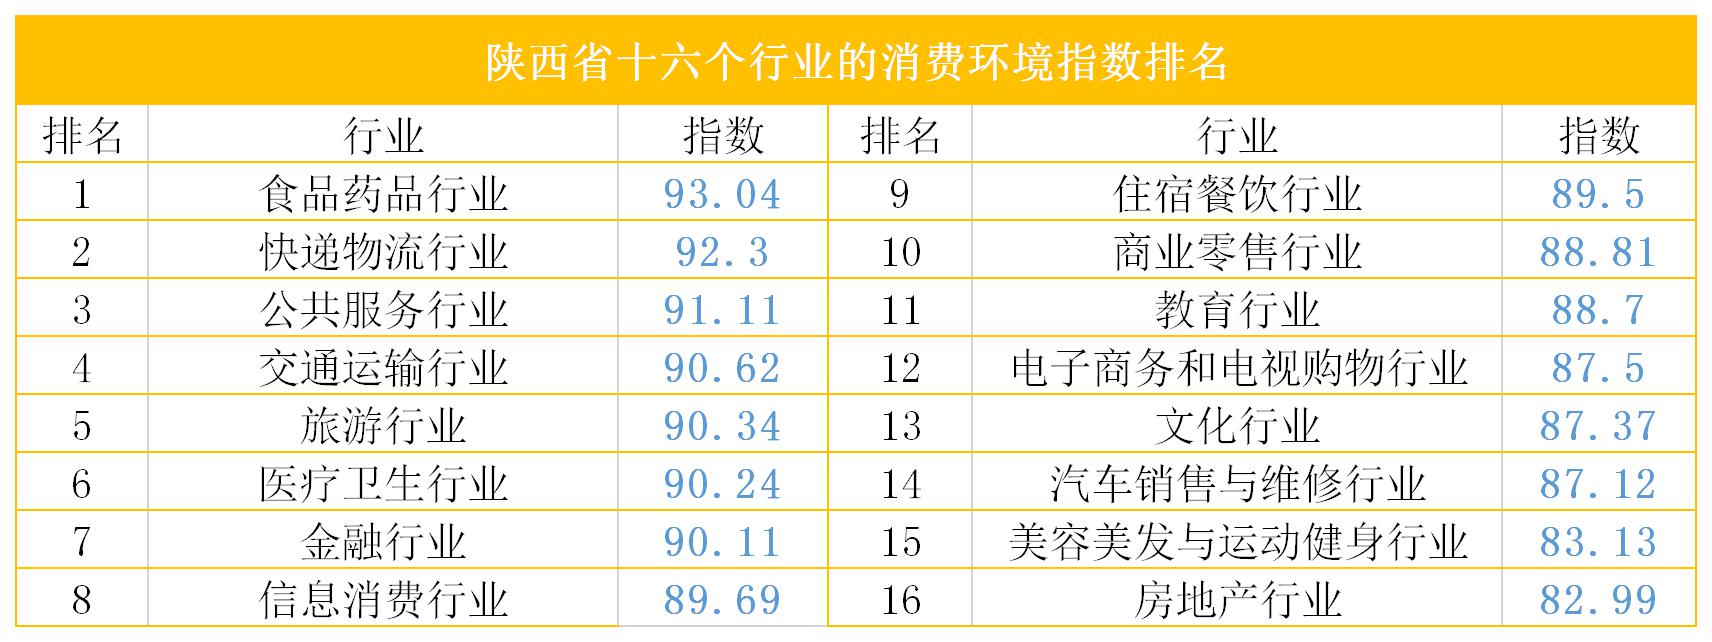 陕西省十六个行业的消费环境指数排名（凤凰网陕西制图）